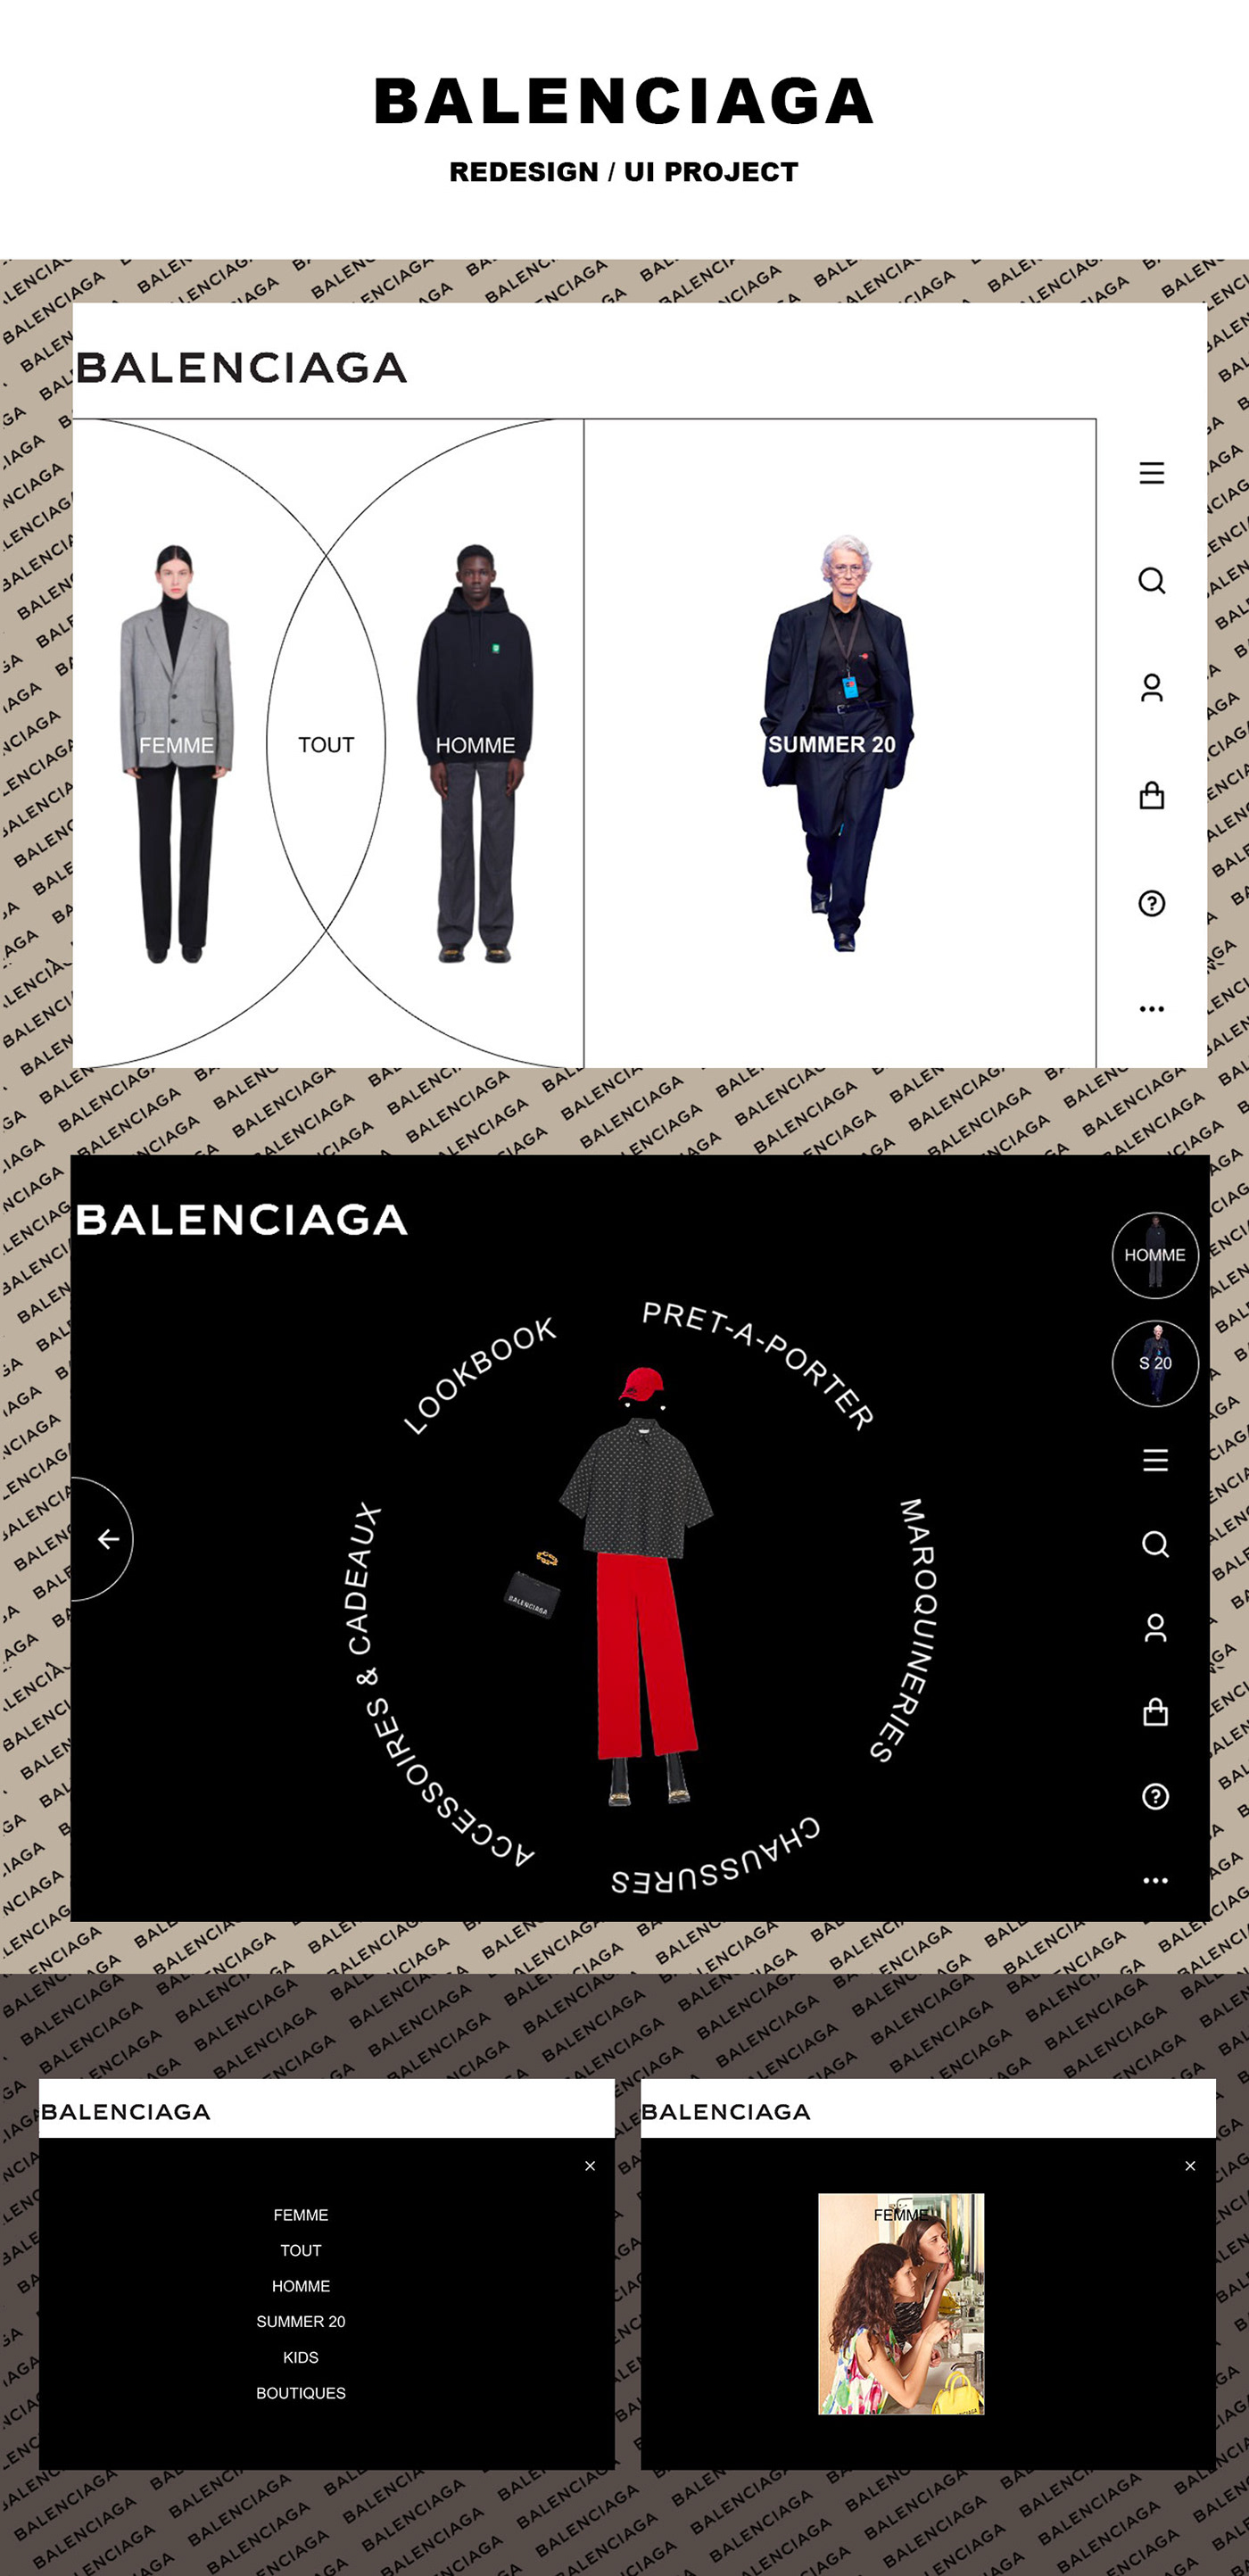 Balenciaga Mode redesign UI interaction interactions user interface Webdesign web redesign invision studio